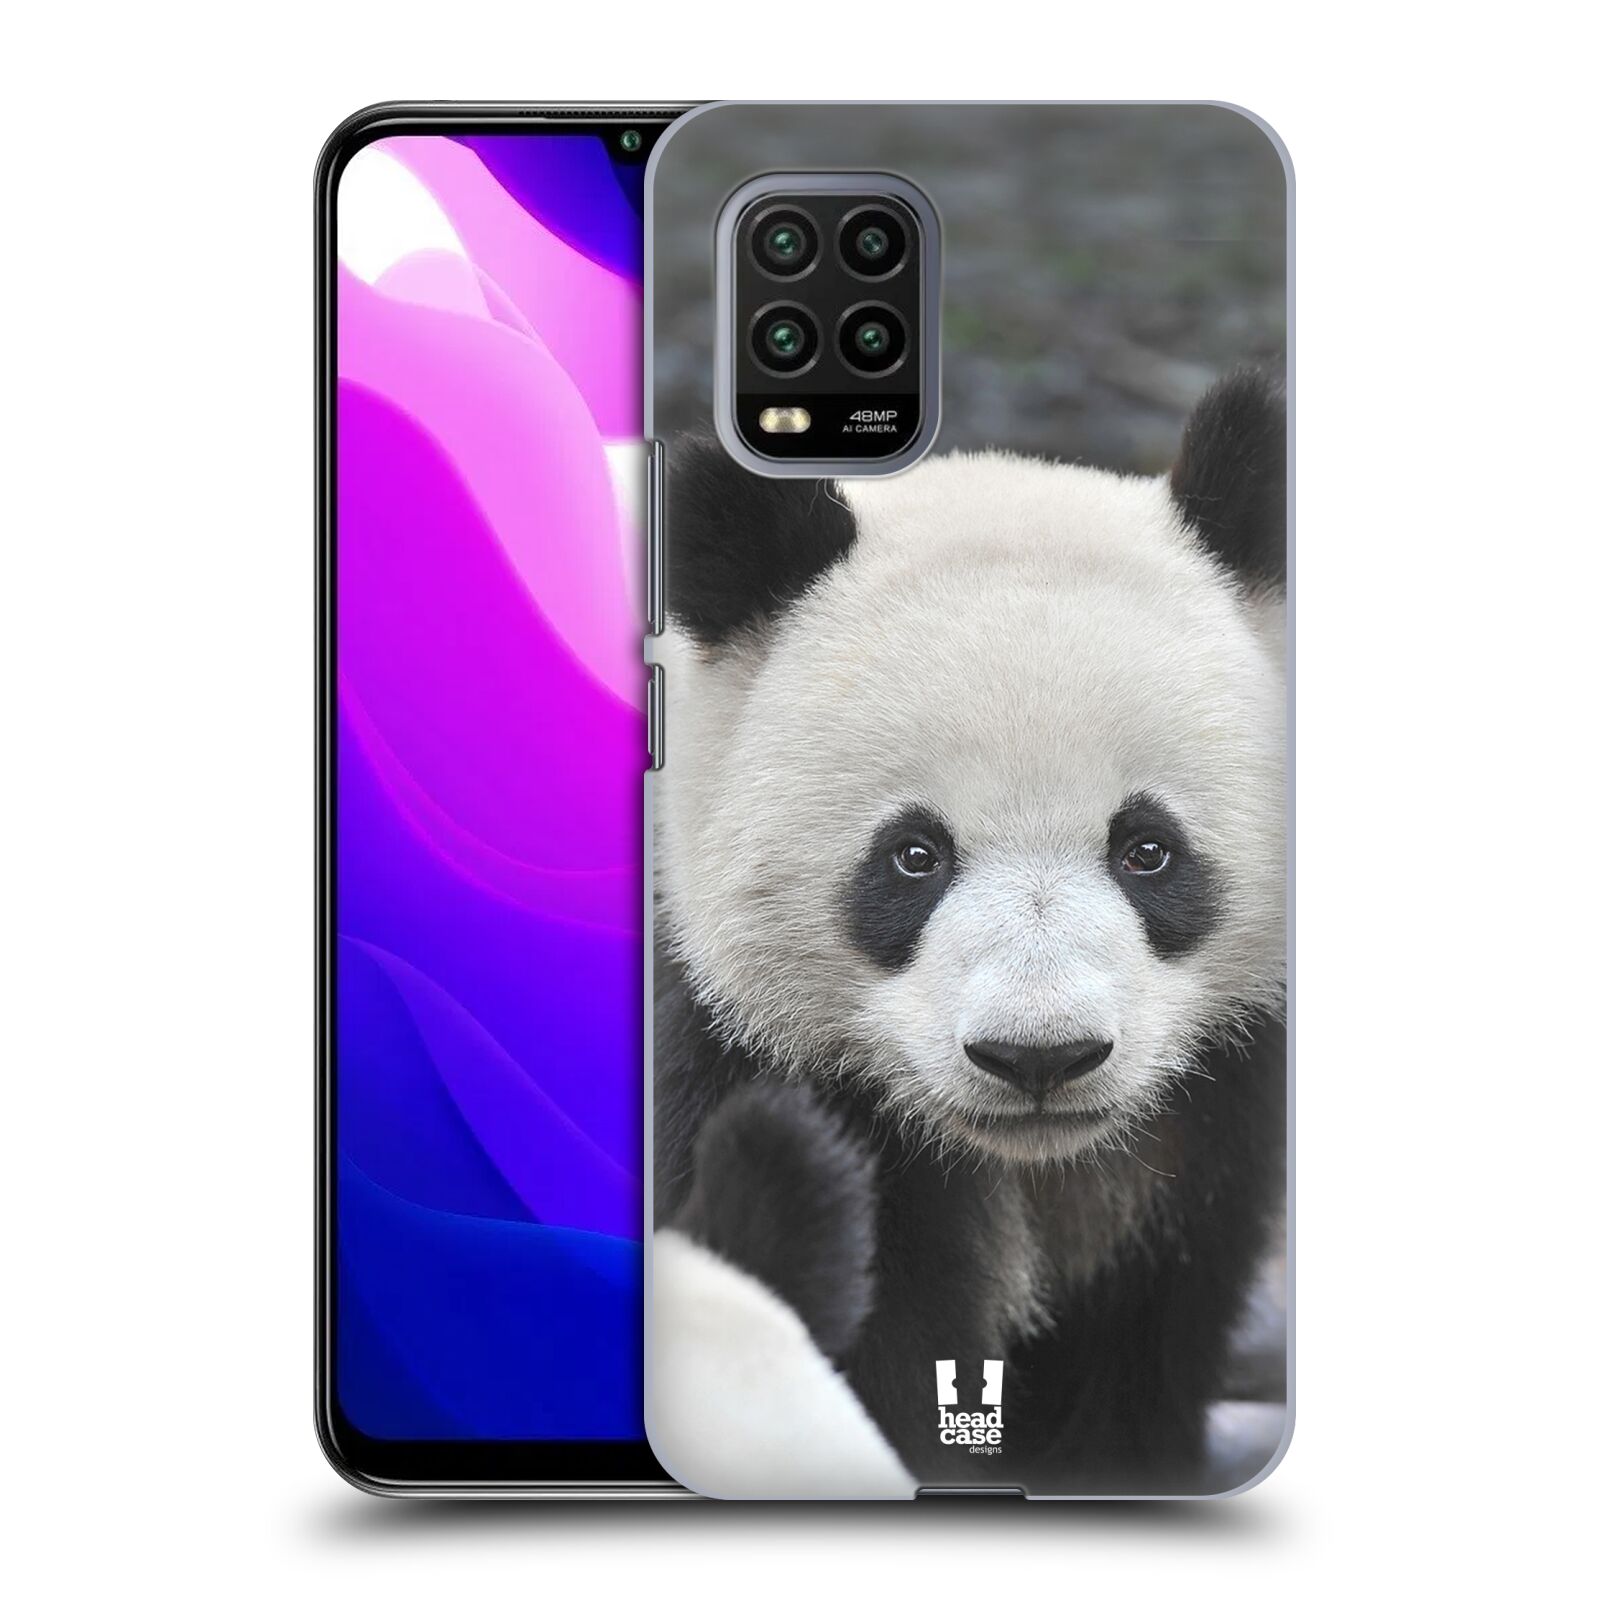 Zadní obal pro mobil Xiaomi Mi 10 LITE - HEAD CASE - Svět zvířat medvěd panda